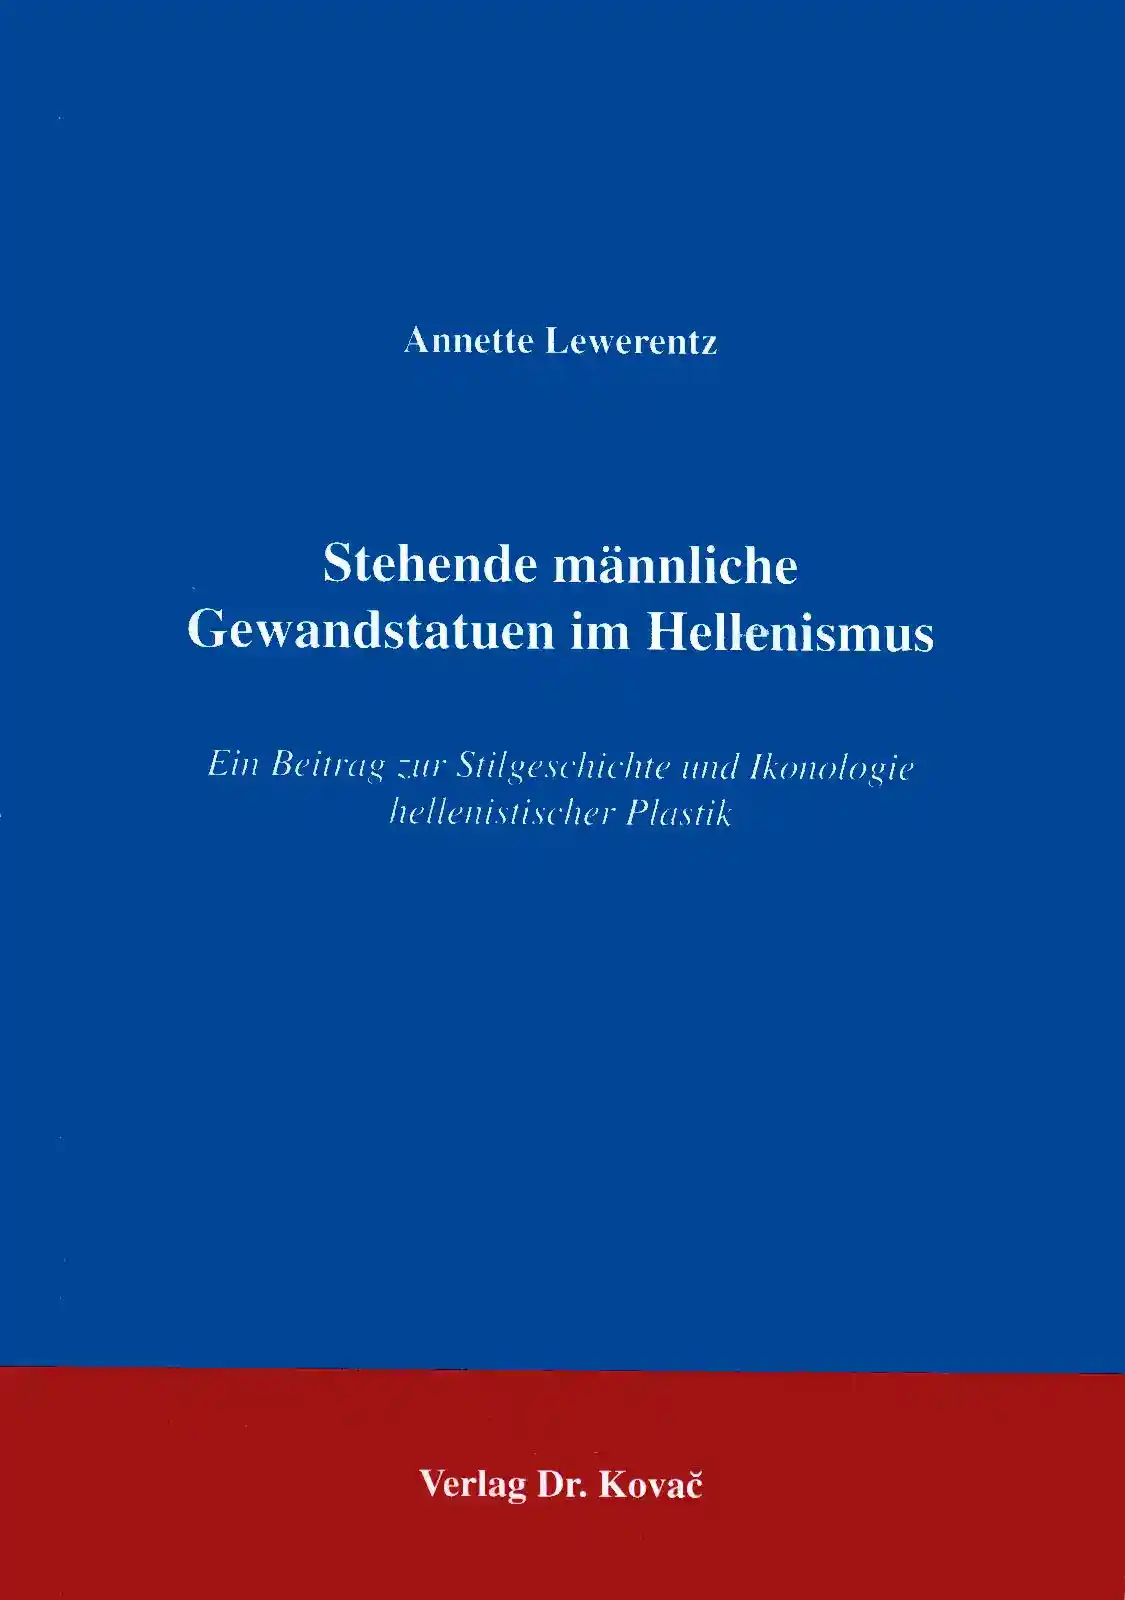 Stehende männliche Gewandstatuen im Hellenismus (Forschungsarbeit)